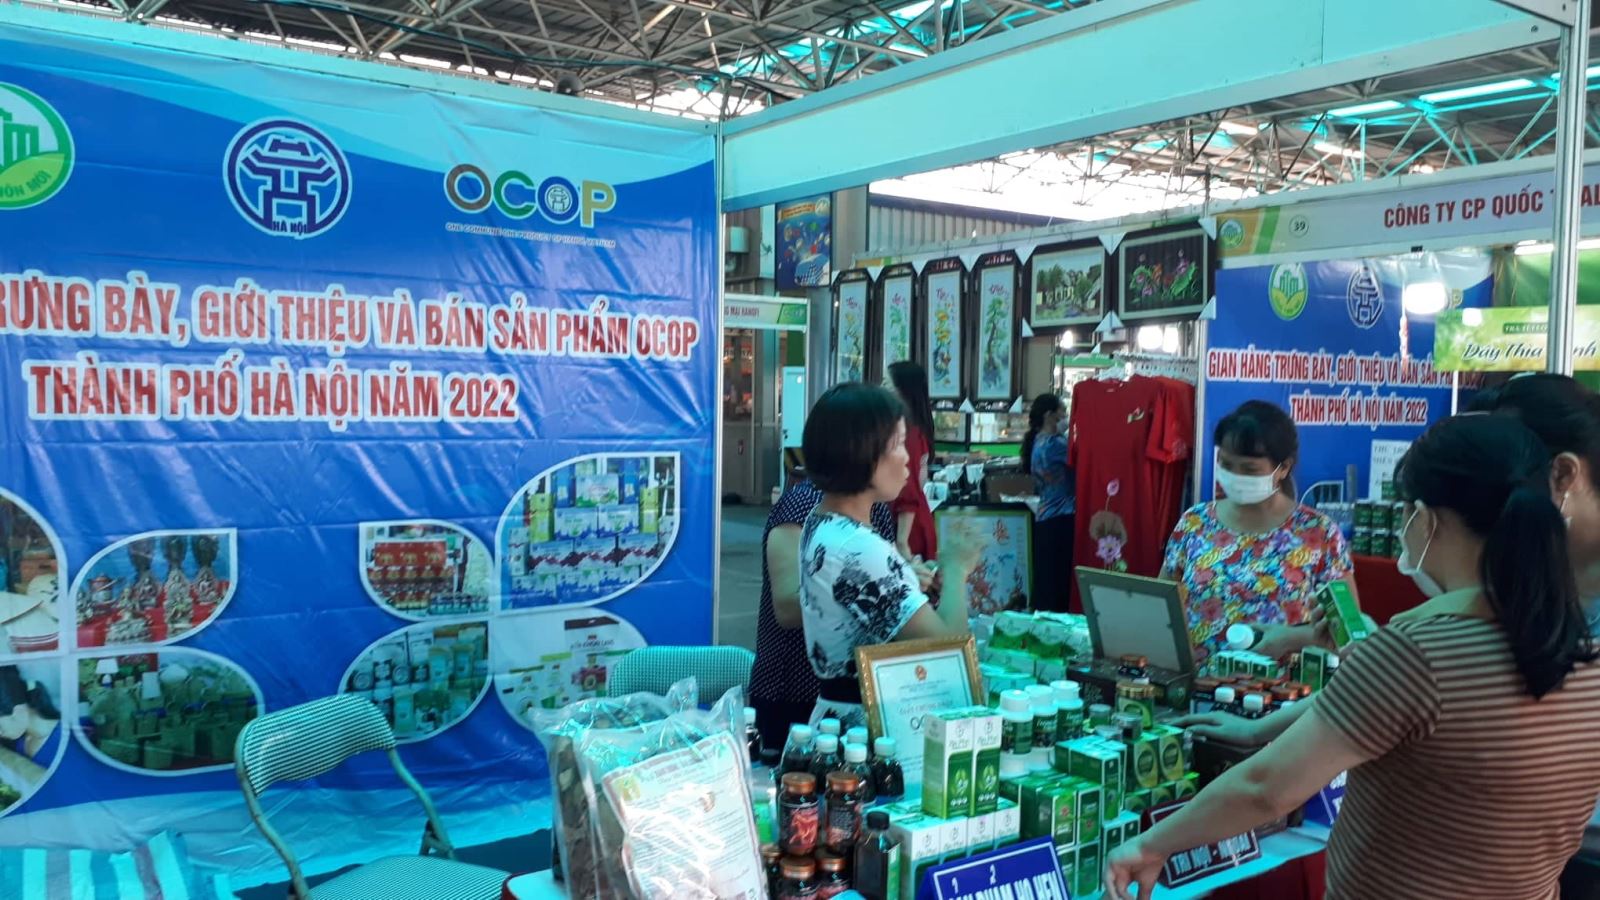 Hà Nội tổ chức tuần hàng tư vấn, giới thiệu sản phẩm OCOP tại siêu thị - Ảnh 2.